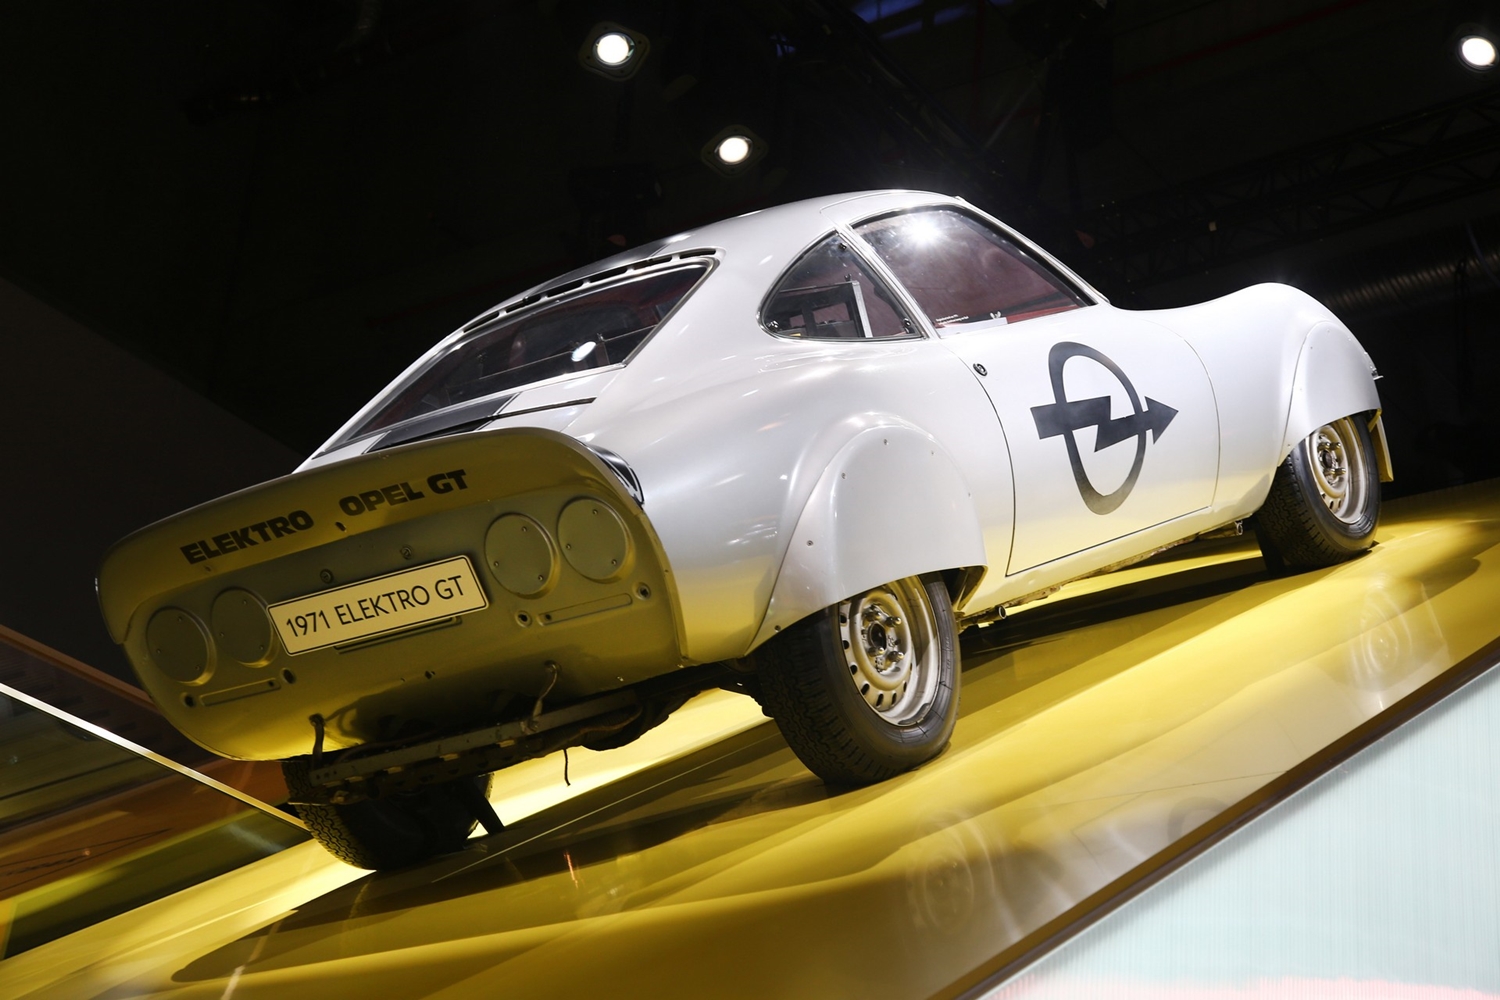 Az Opel már 50 éve is nagyon hitt az elektromos autózásban 9